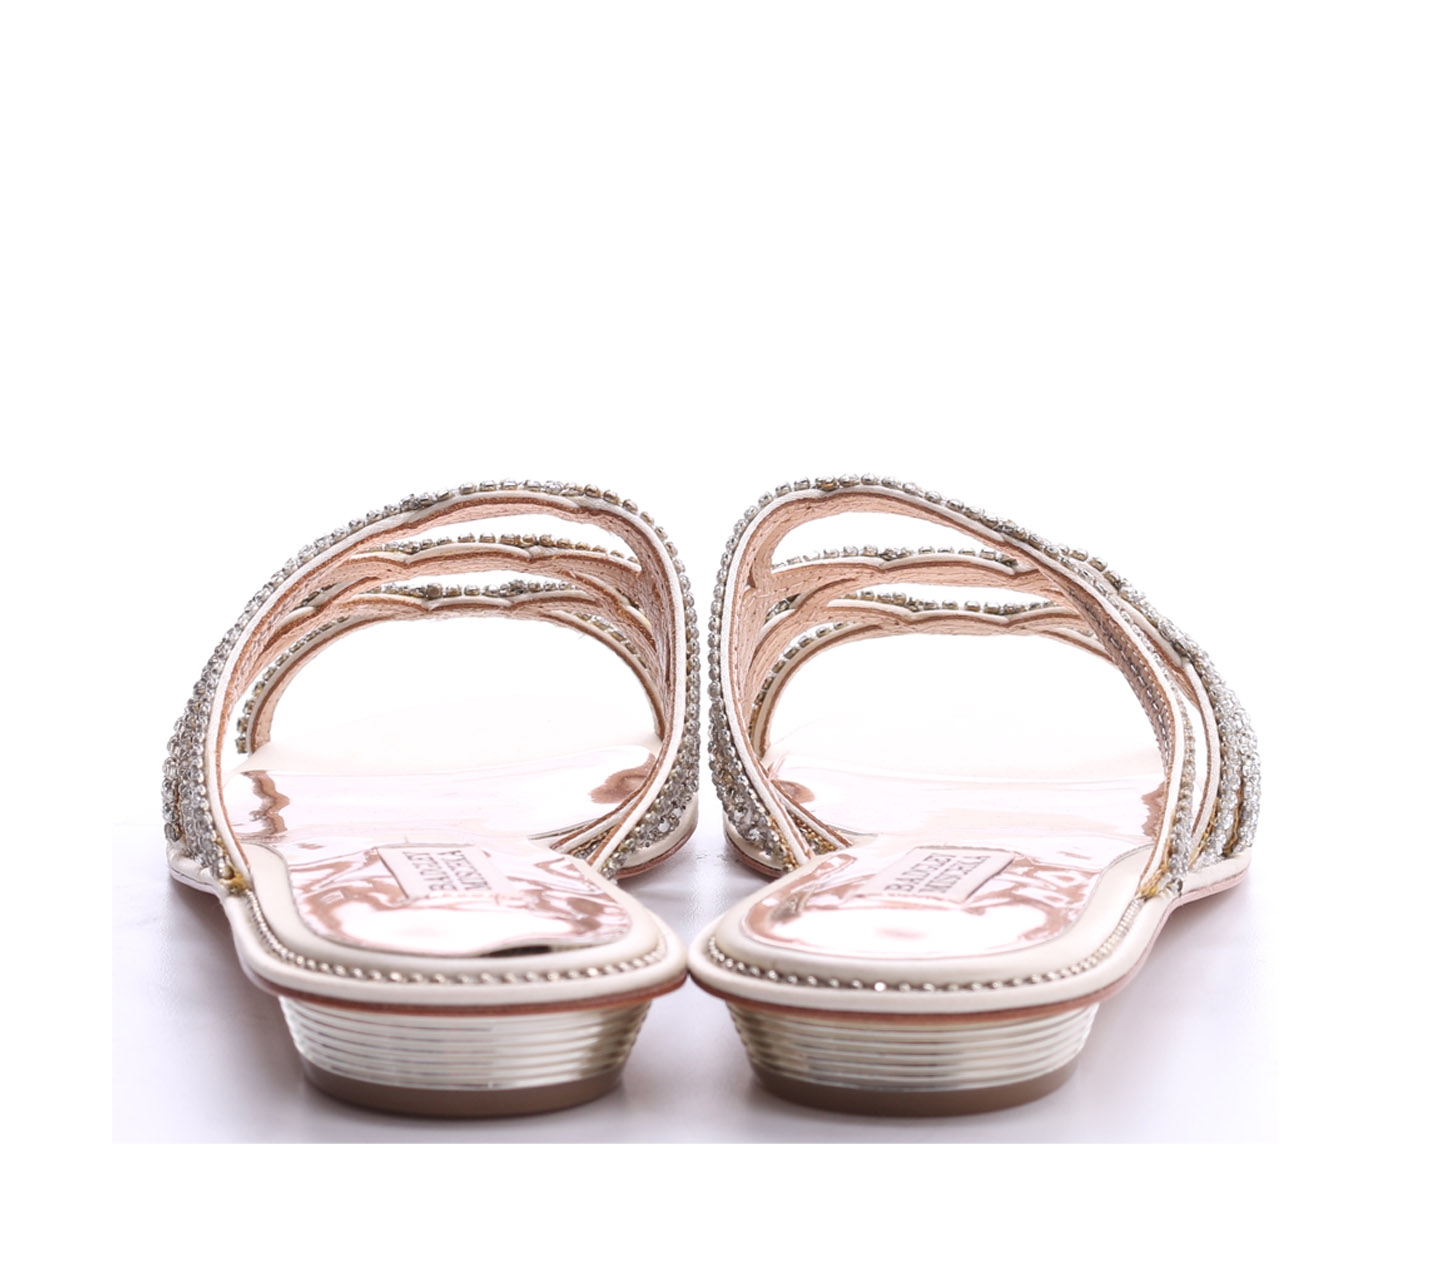 Badgley Mischka Cream Sofie Embellished Strap Sandals